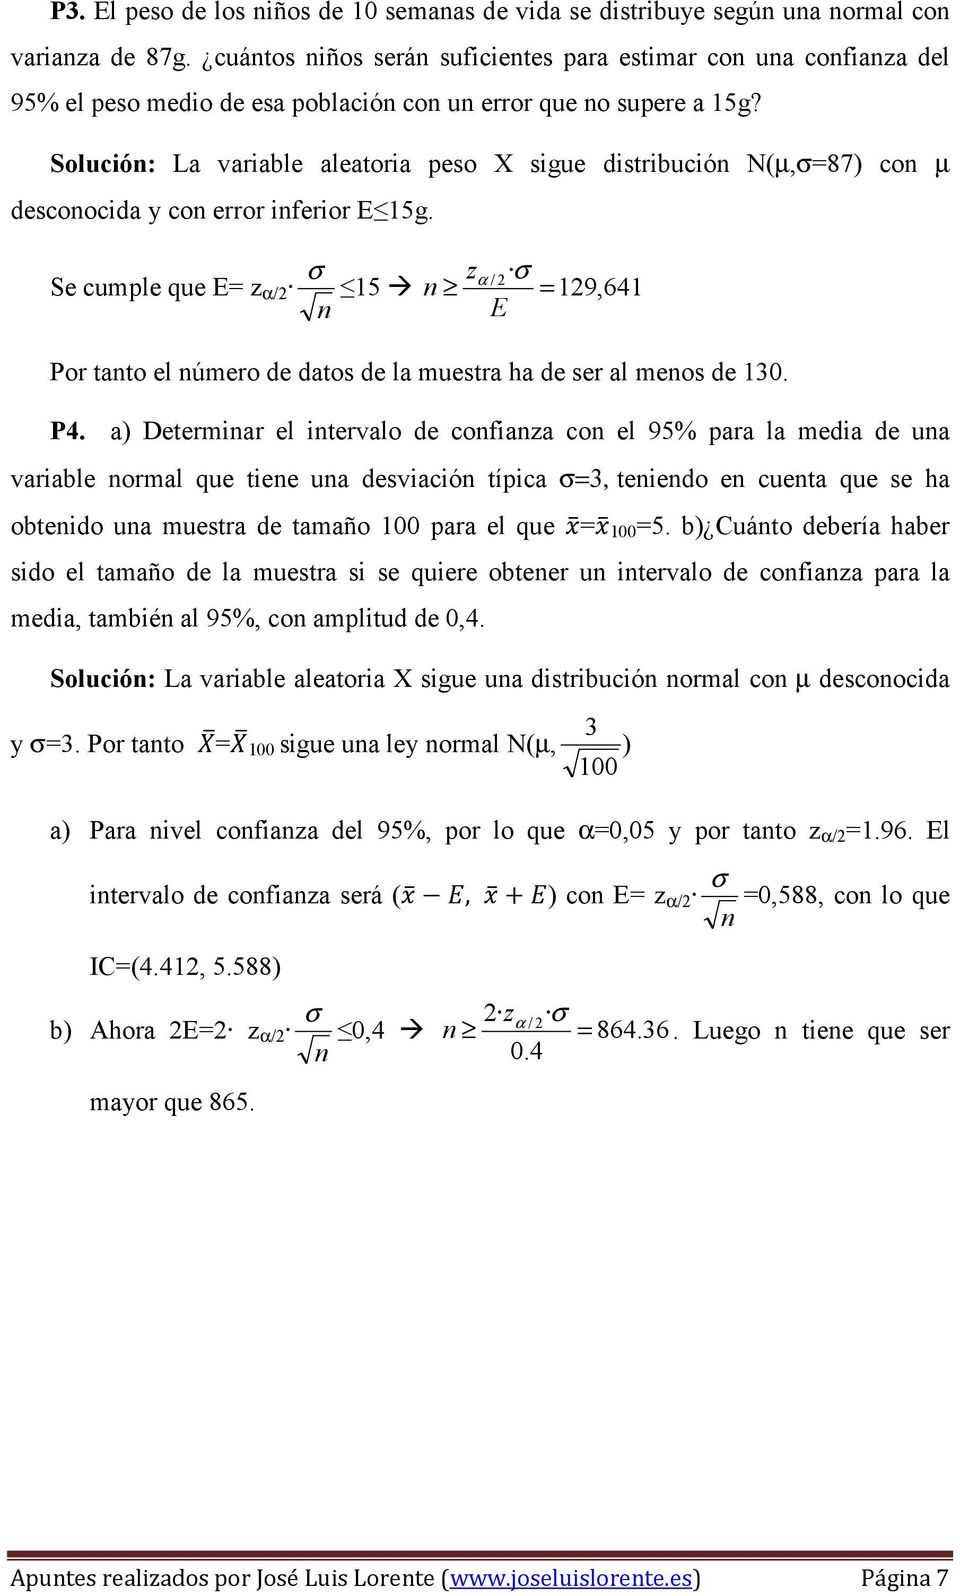 Solució: La variable aleatoria peso X sigue distribució N(µ,=87) co µ descoocida y co error iferior E 15g.